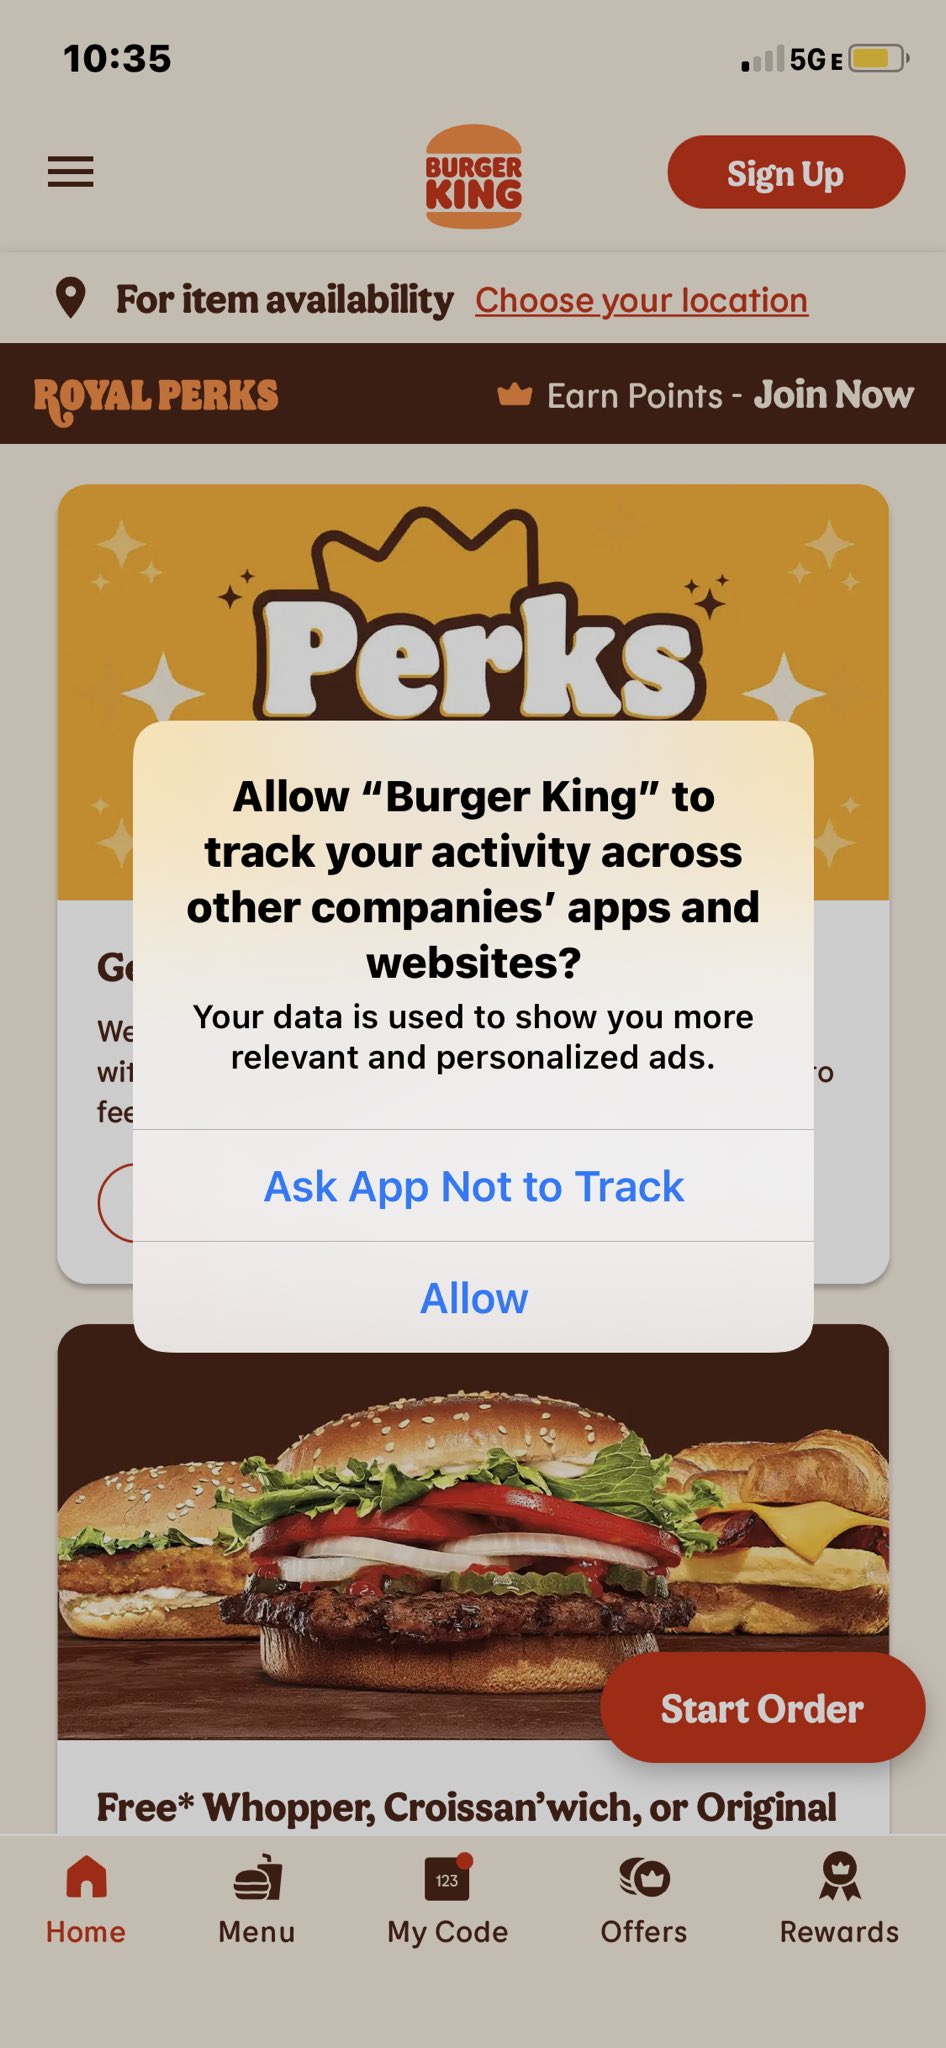 Royal Perks - Burger King